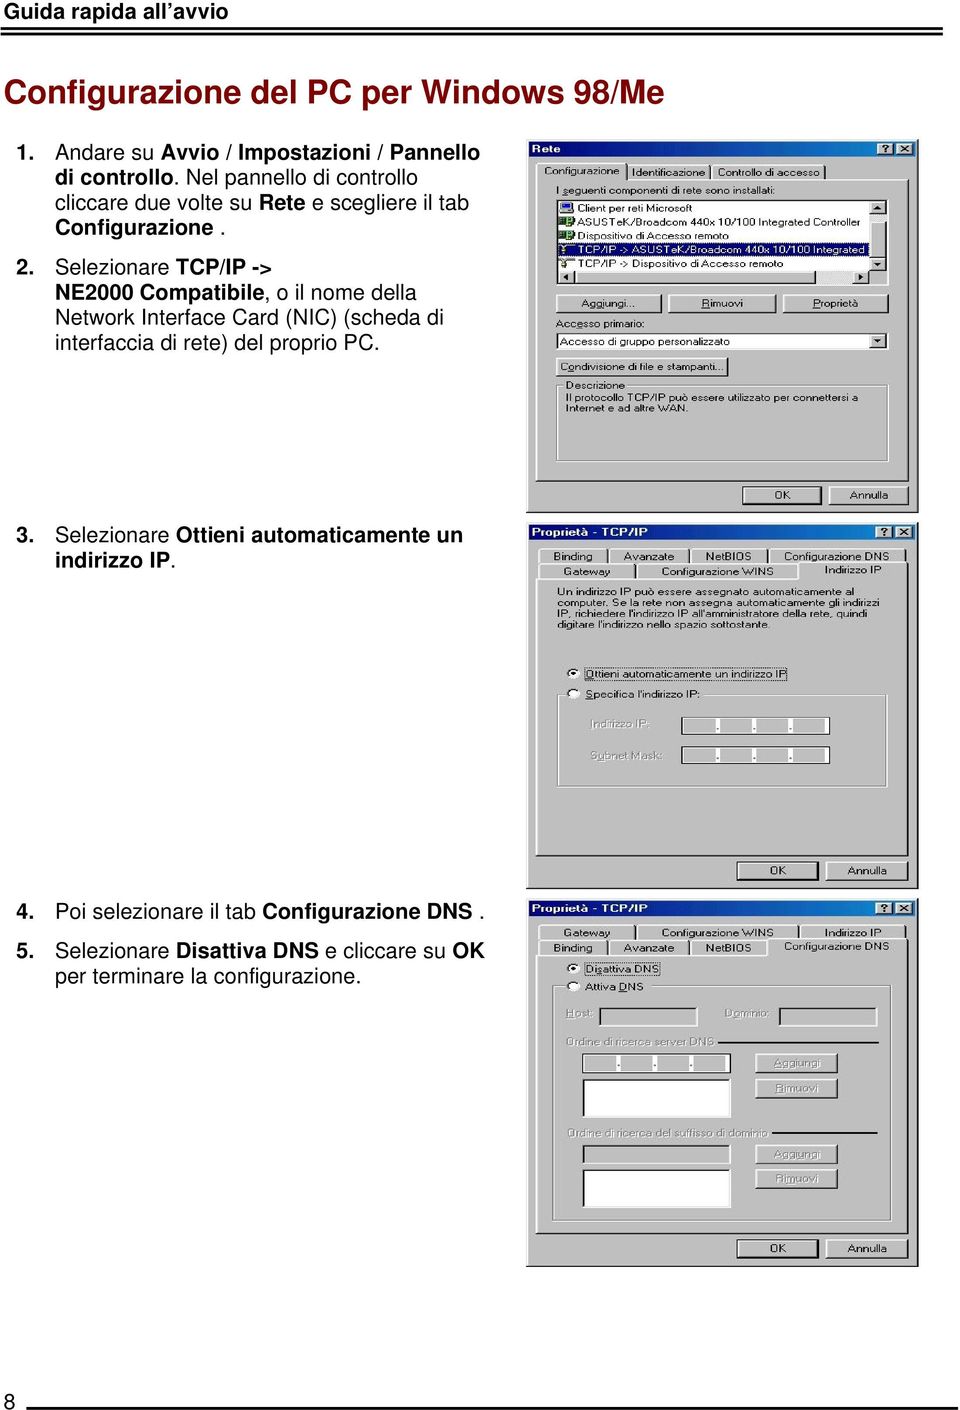 Selezionare TCP/IP -> NE2000 Compatibile, o il nome della Network Interface Card (NIC) (scheda di interfaccia di rete) del proprio